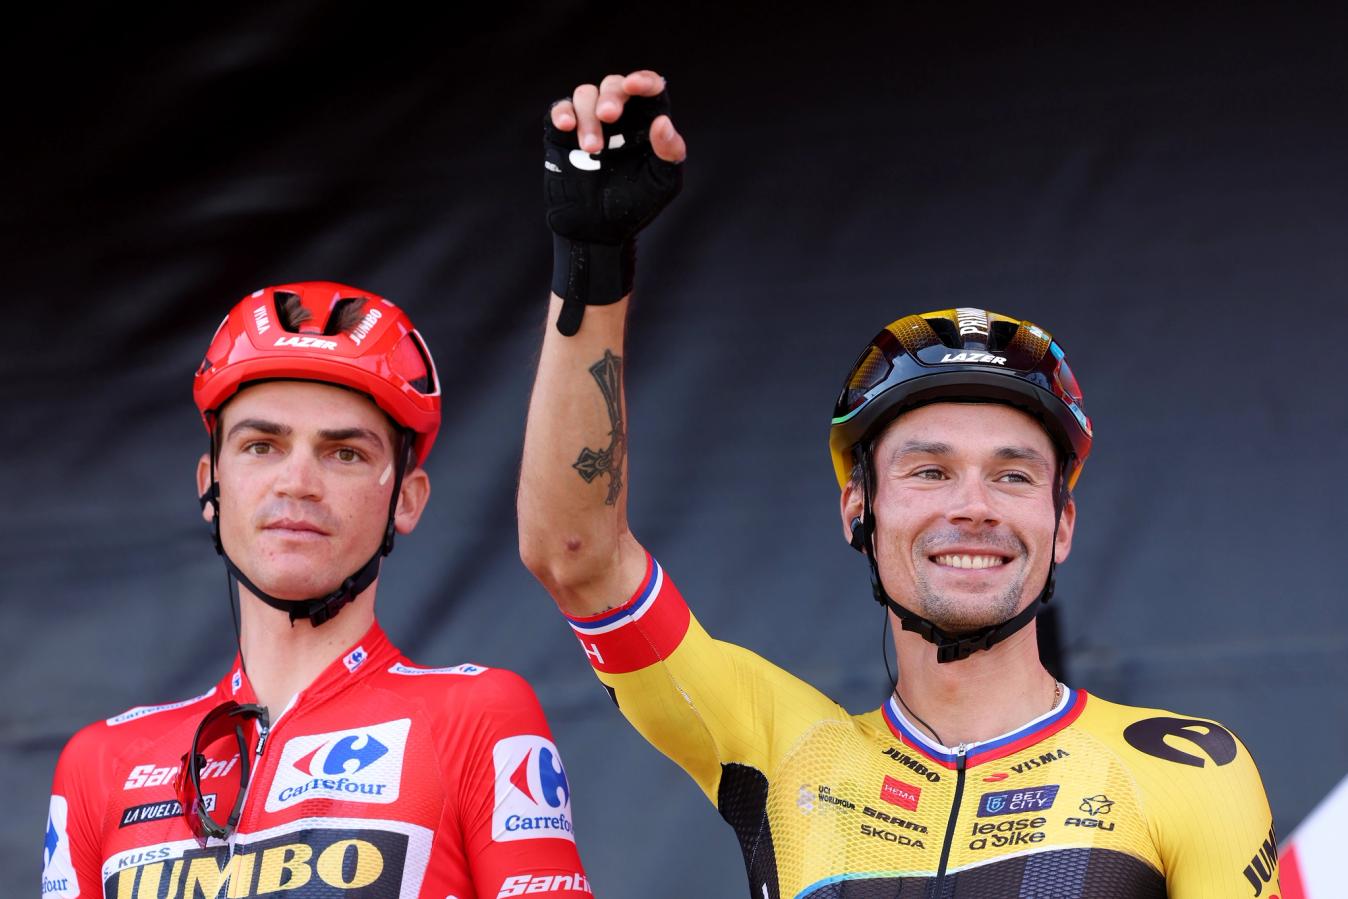 Roglič and Kuss at the Vuelta 